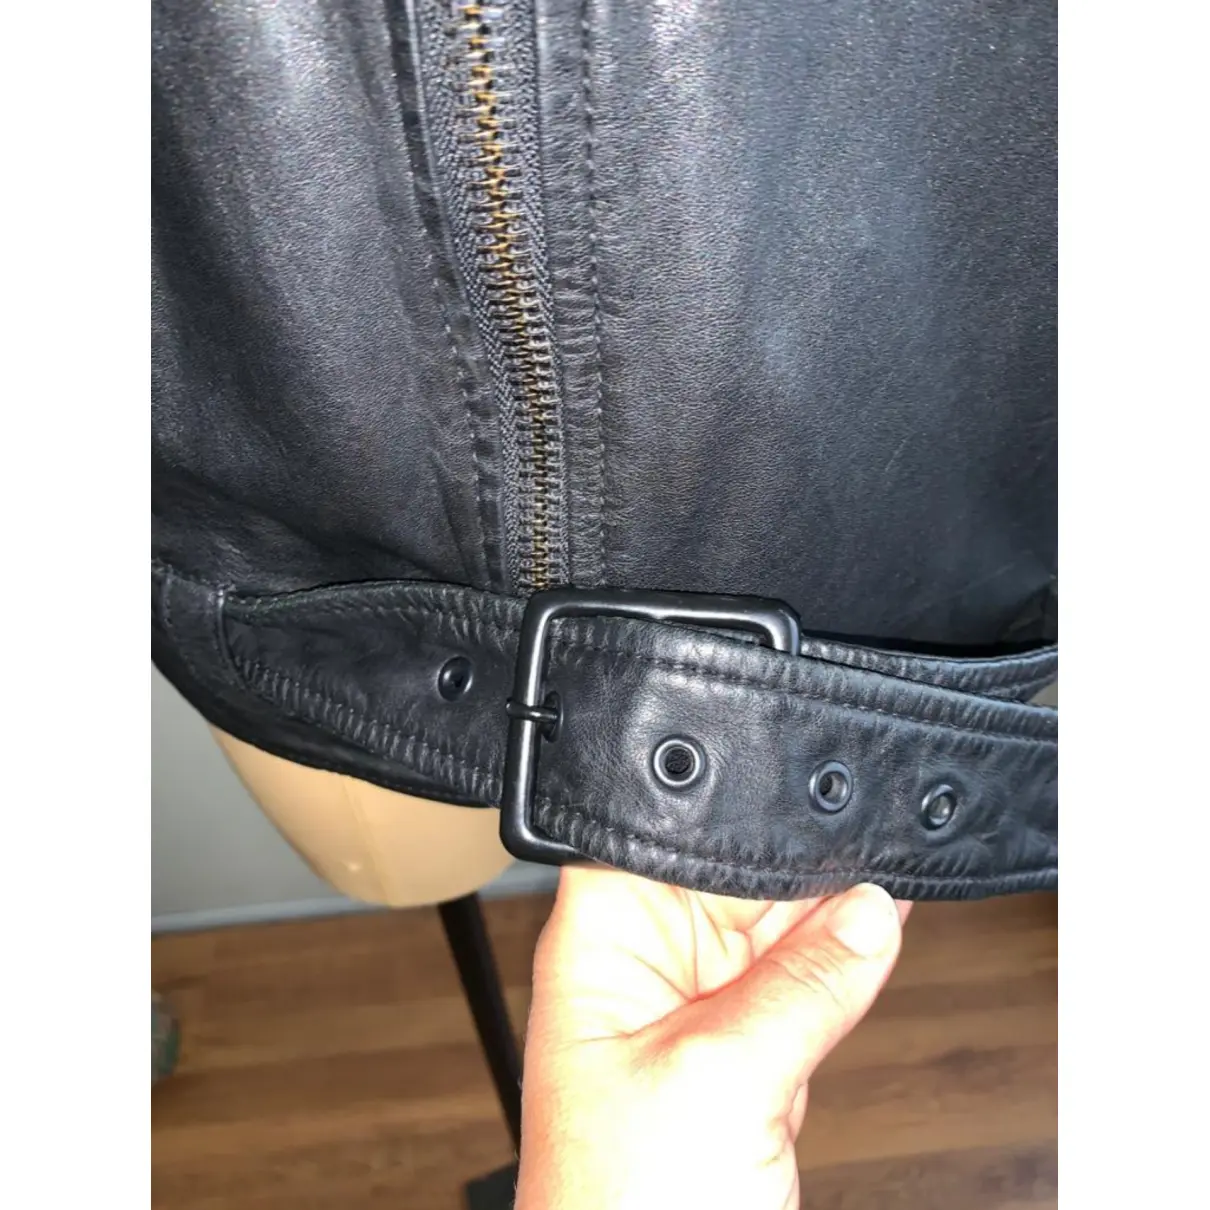 Leather biker jacket Schott